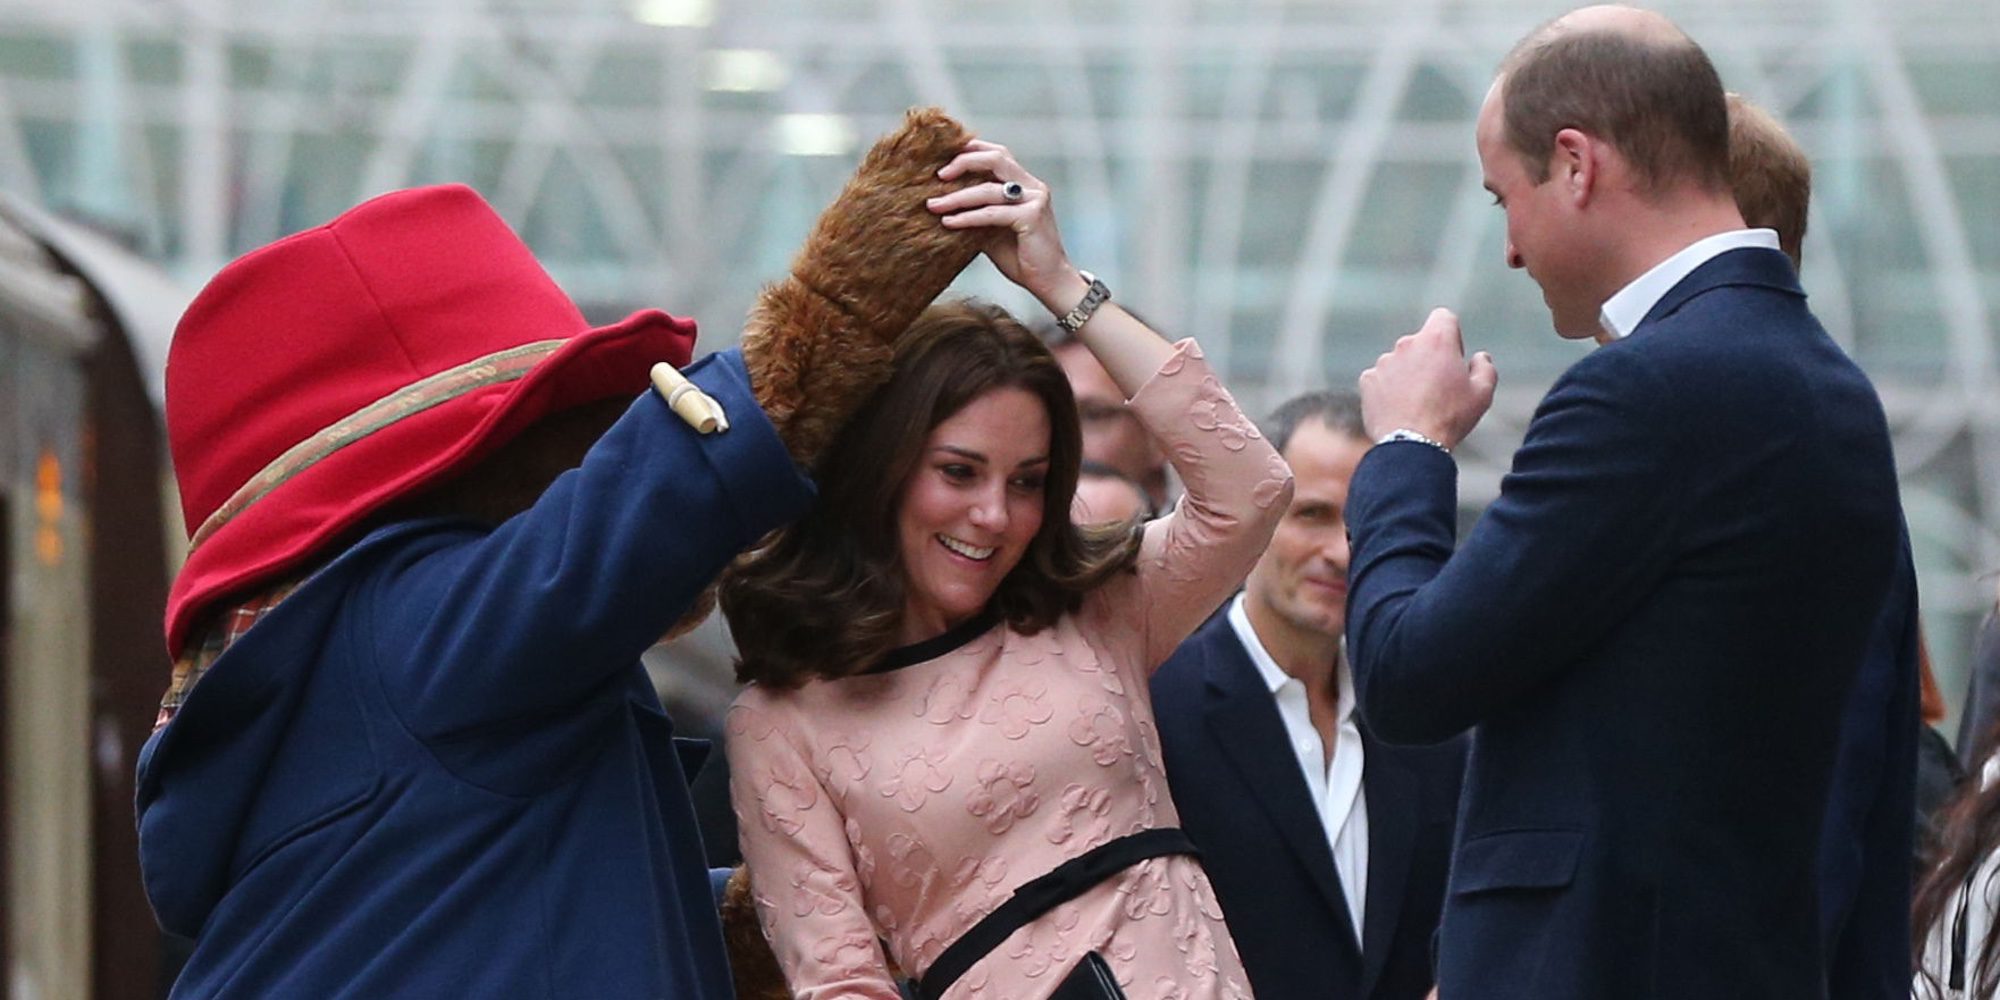 Kate Middleton se divierte bailando con el oso Paddington en un acto oficial junto a los Príncipes Guillermo y Harry